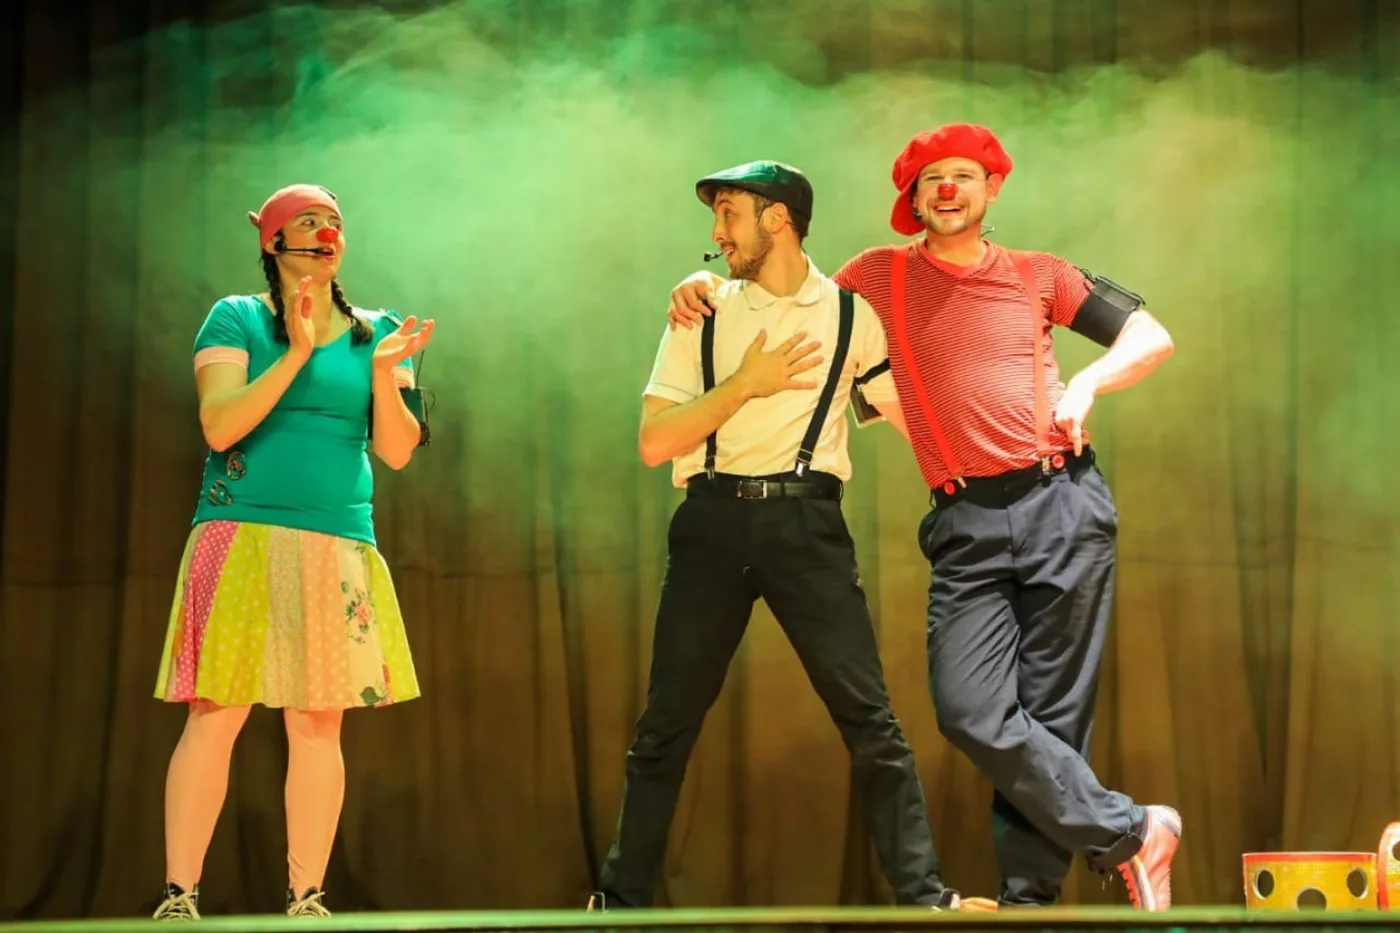 Show de Clown y Circo de “Lala, Fito y Tito”, a cargo del grupo “Rueda de la Bicicleta”, un espectáculo de malabares, acrobacia y equilibrio. 